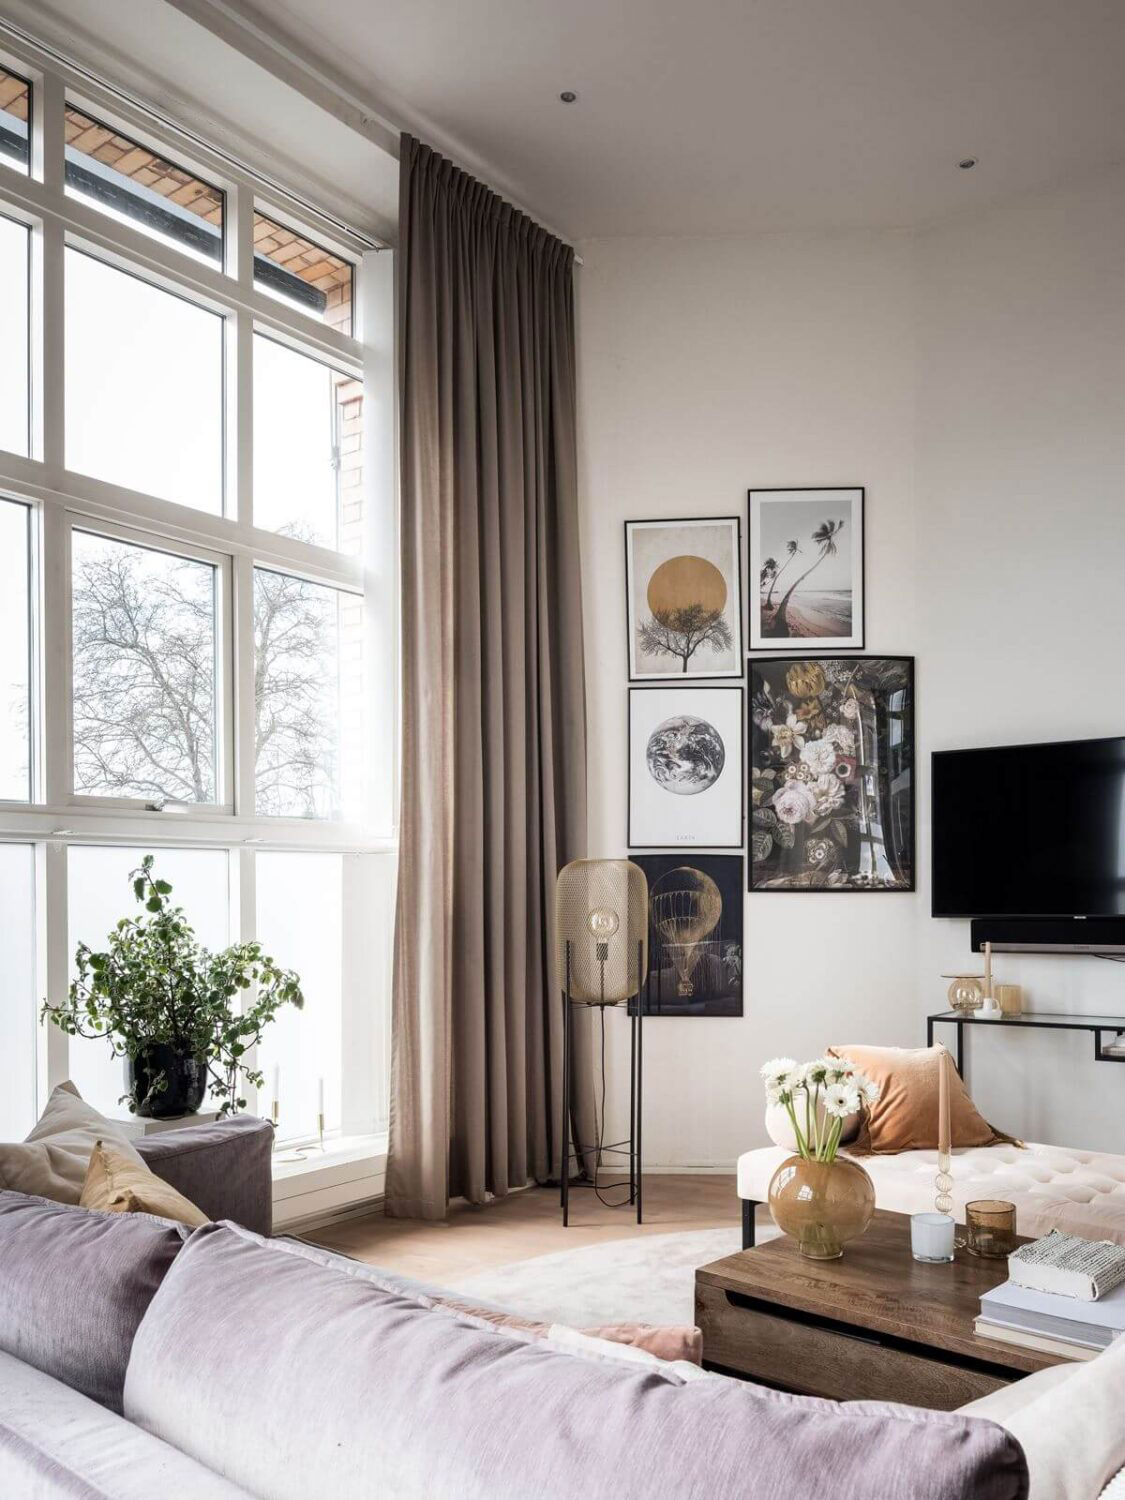 Арка и второй свет: необычная квартира в Швеции (67 кв. м)